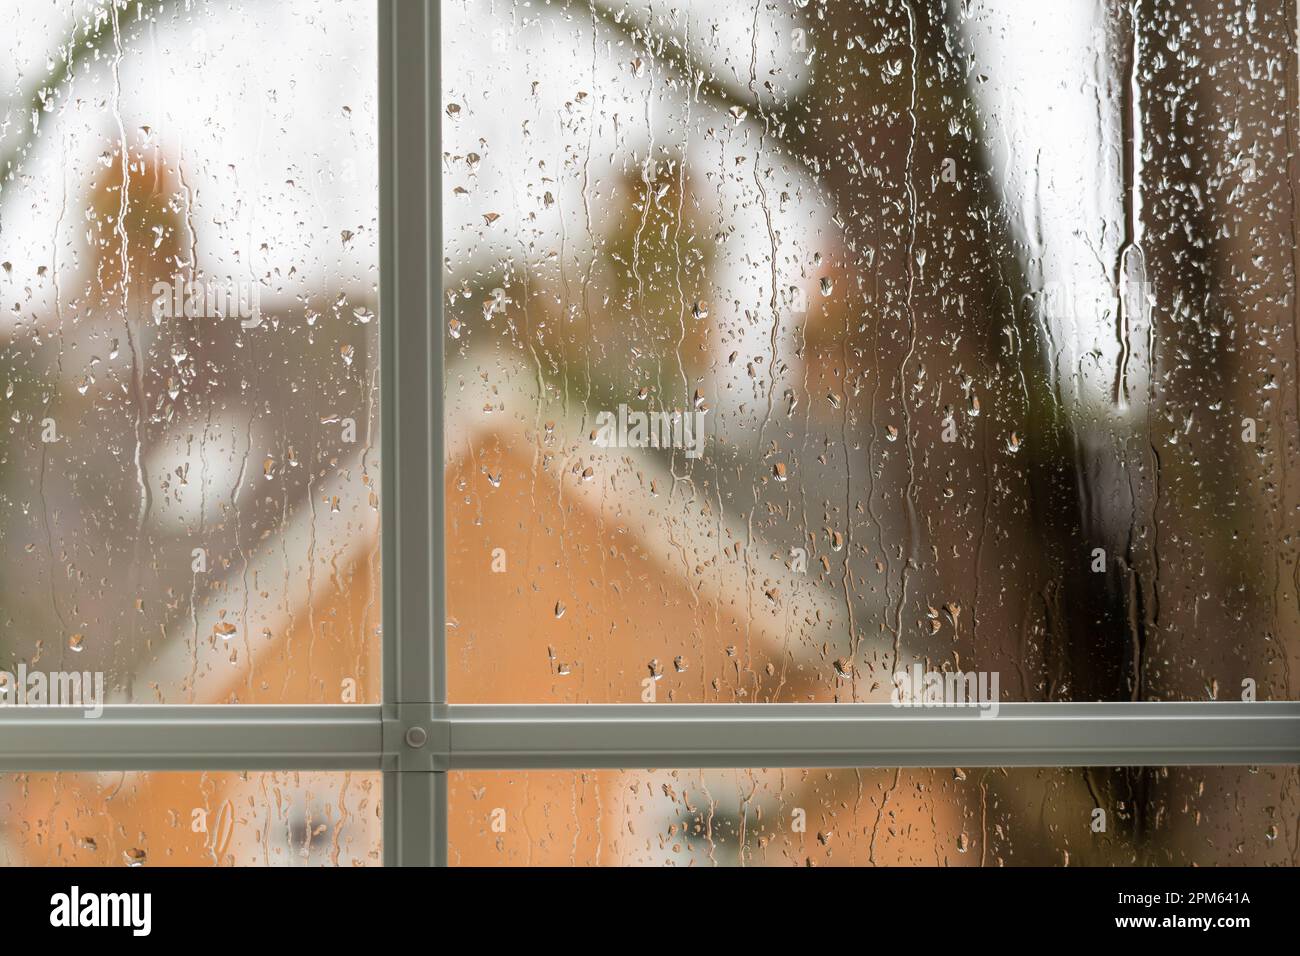 Im März, England, kam es auf einen Lauf durch ein Fenster. Thema: Sparen für einen Regentag, Fonds für Regentage, Frühlingswetter, Regentage, Urlaub Stockfoto